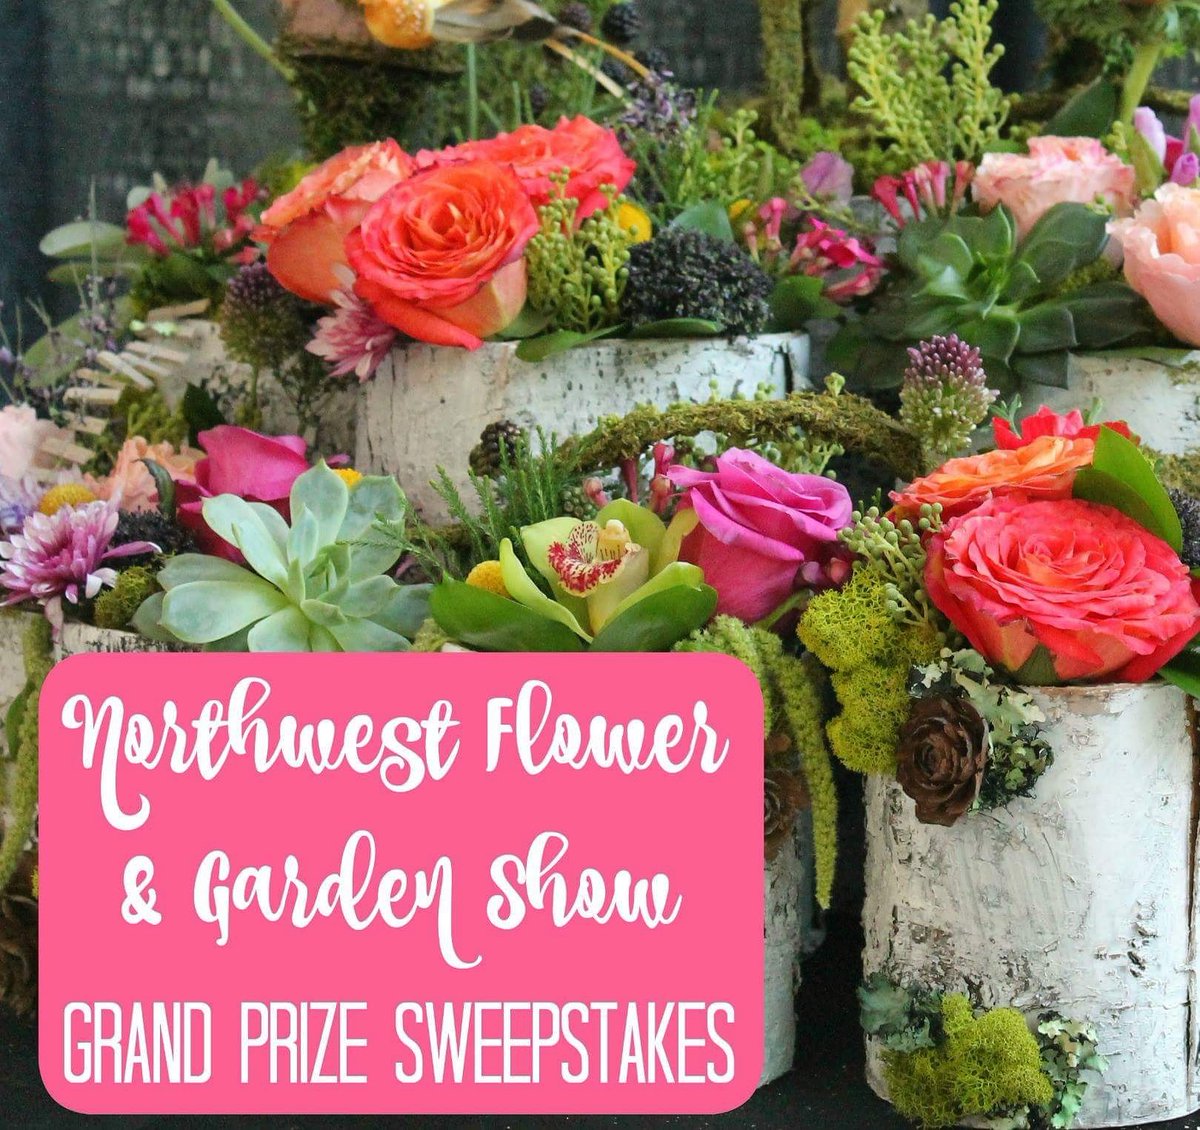 northwest flower & garden festival on twitter: "win $500 cash and 4